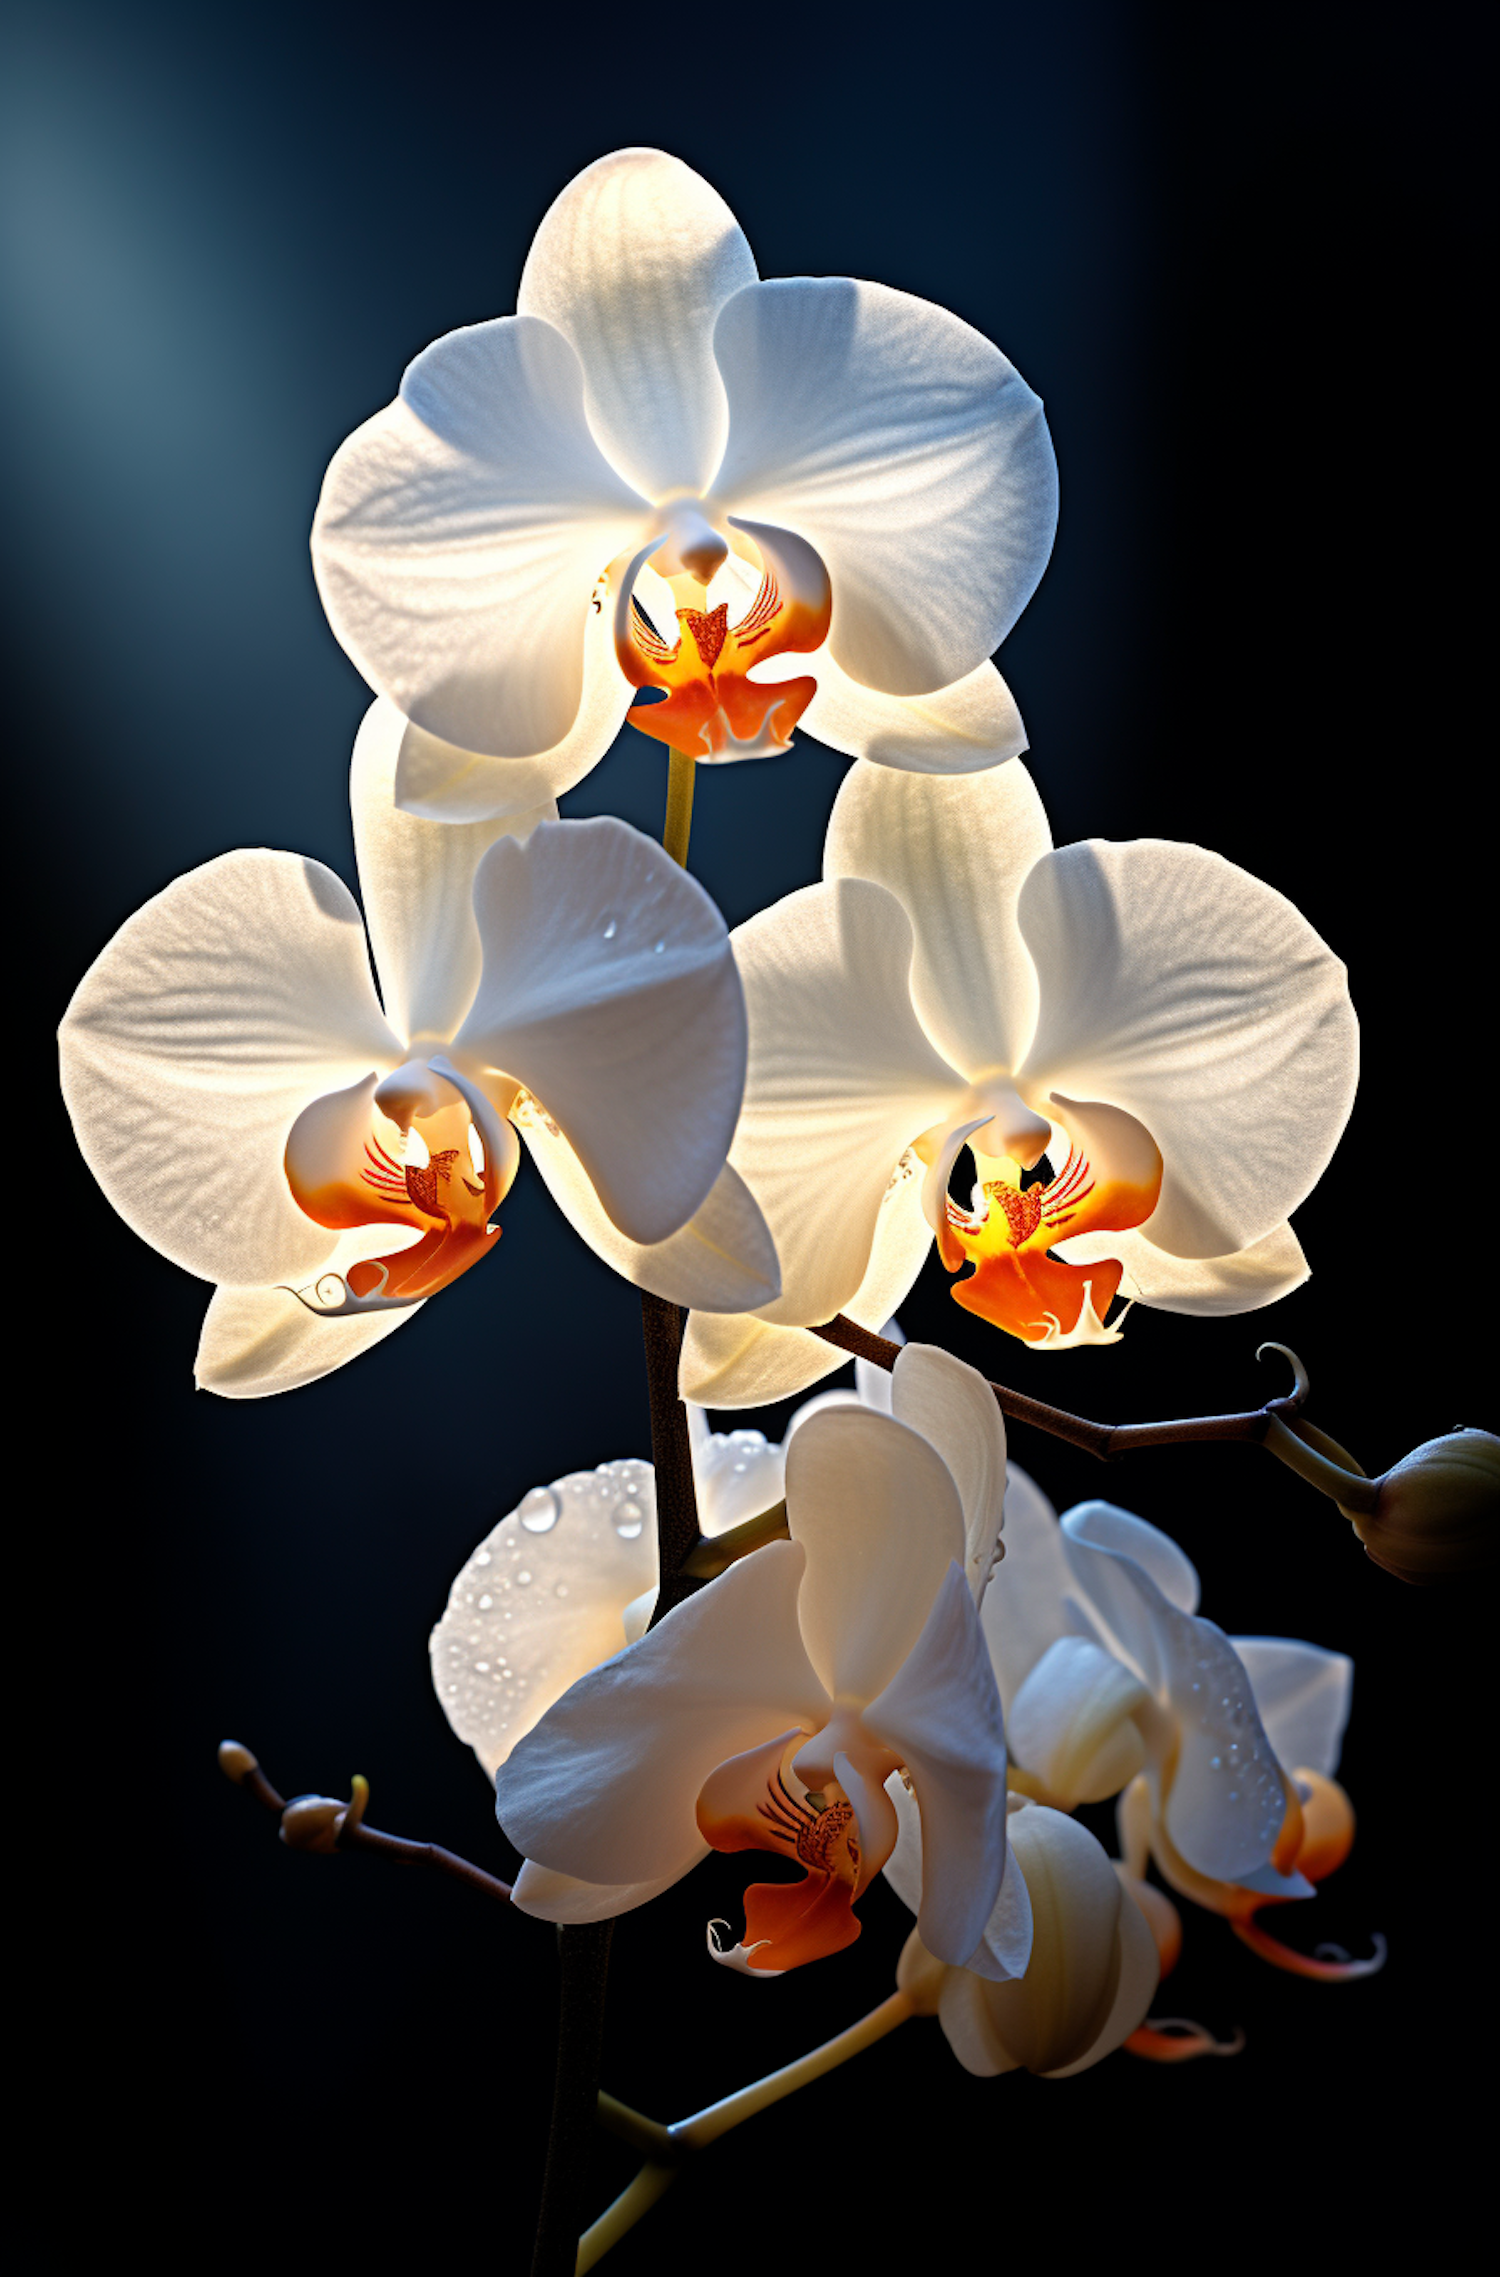 Luminous White Phalaenopsis Orchid Close-Up